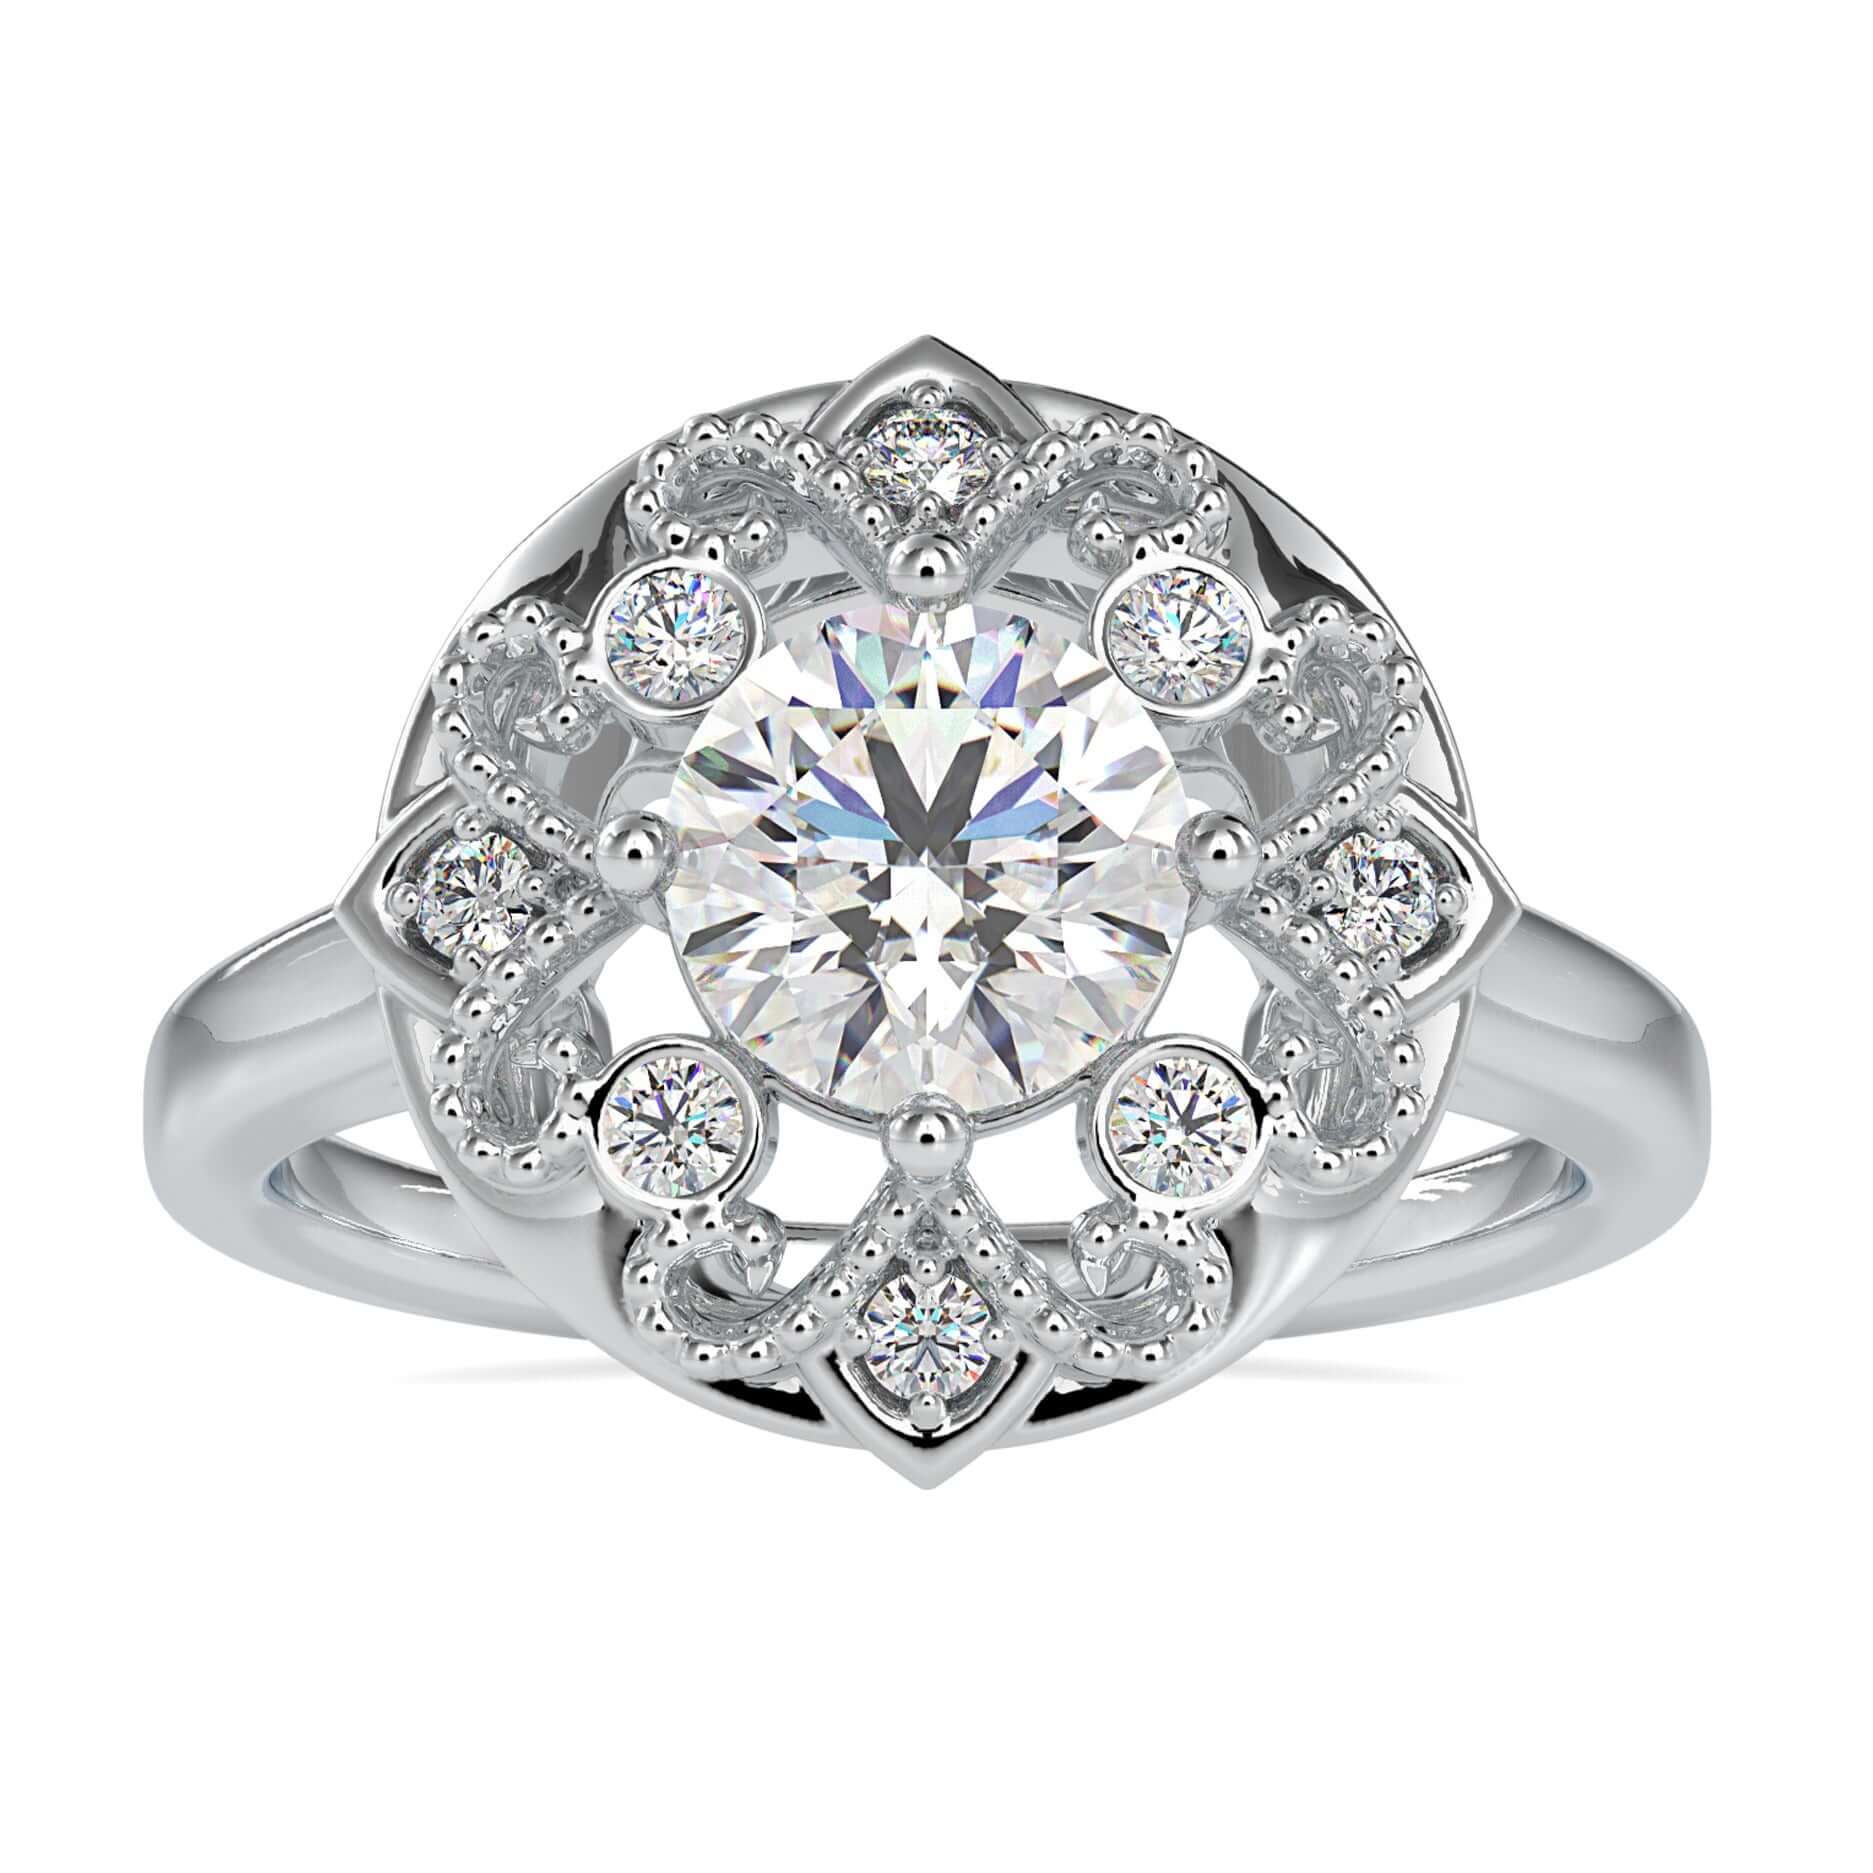 Unique 1.32 TCW Round Moissanite Art Deco Vintage Style Engagement Ring